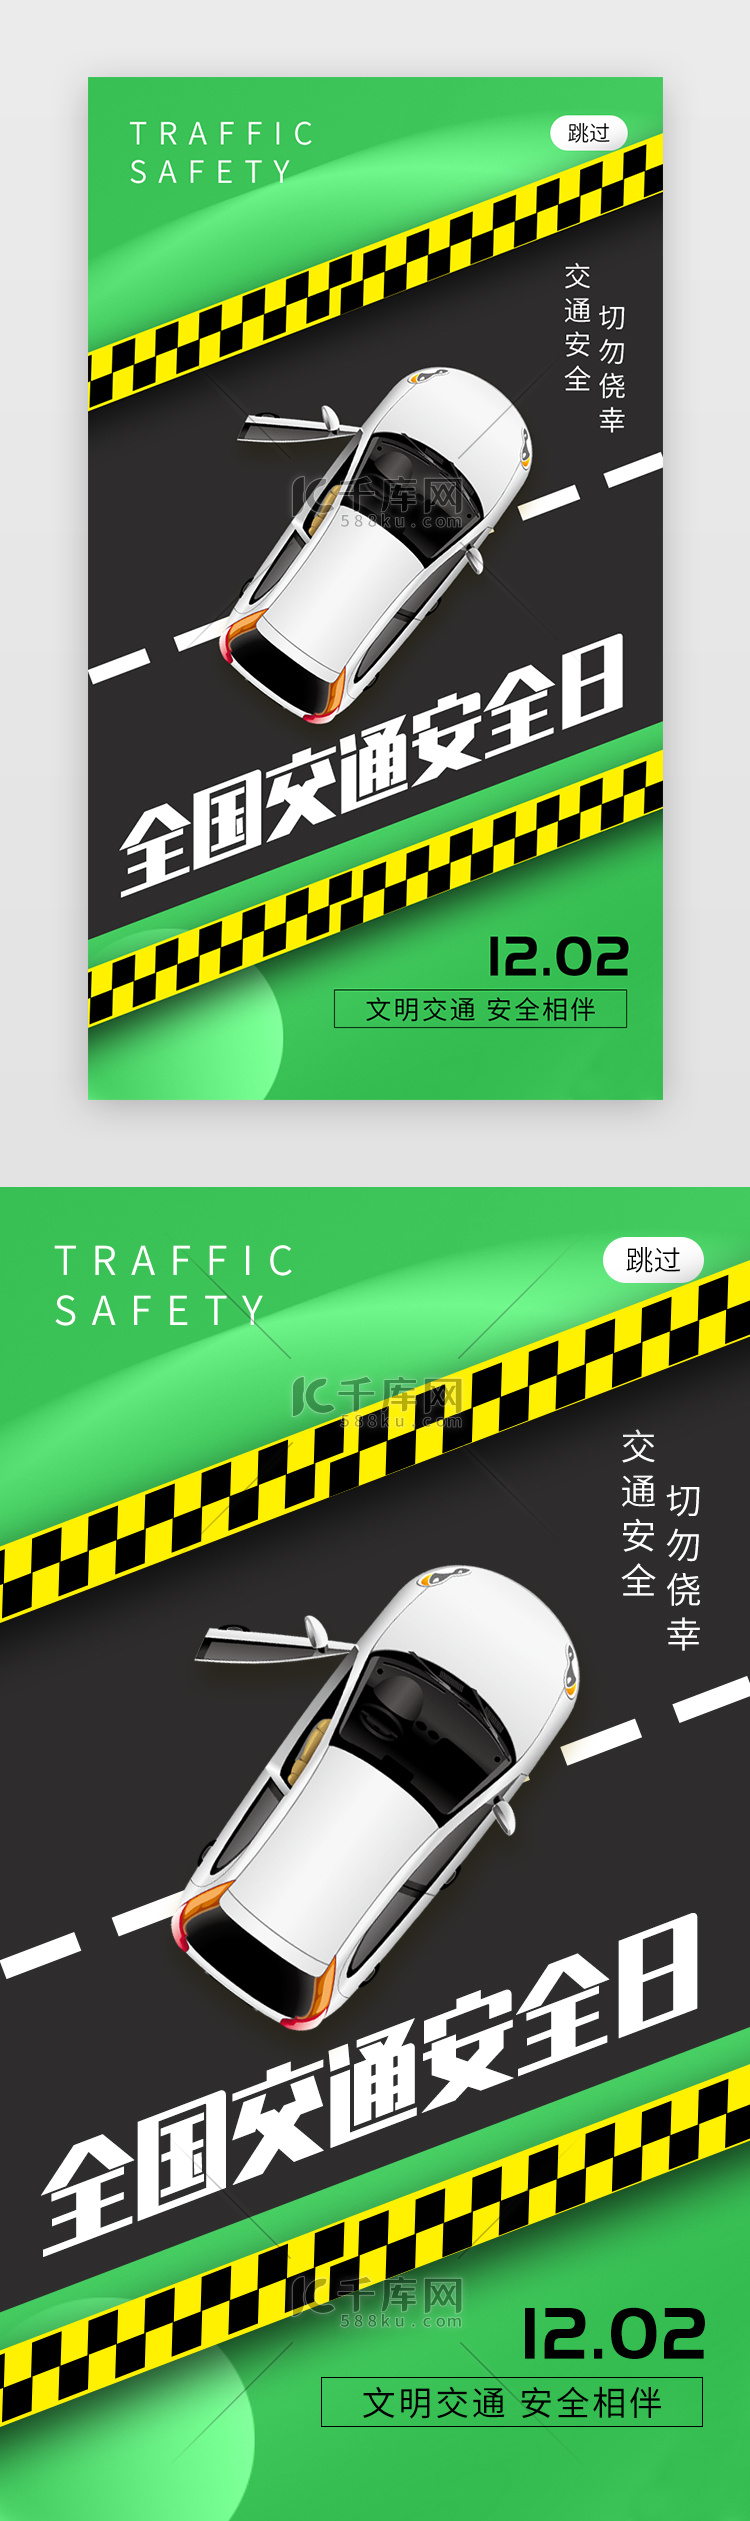 全国交通安全日app闪屏创意绿色汽车